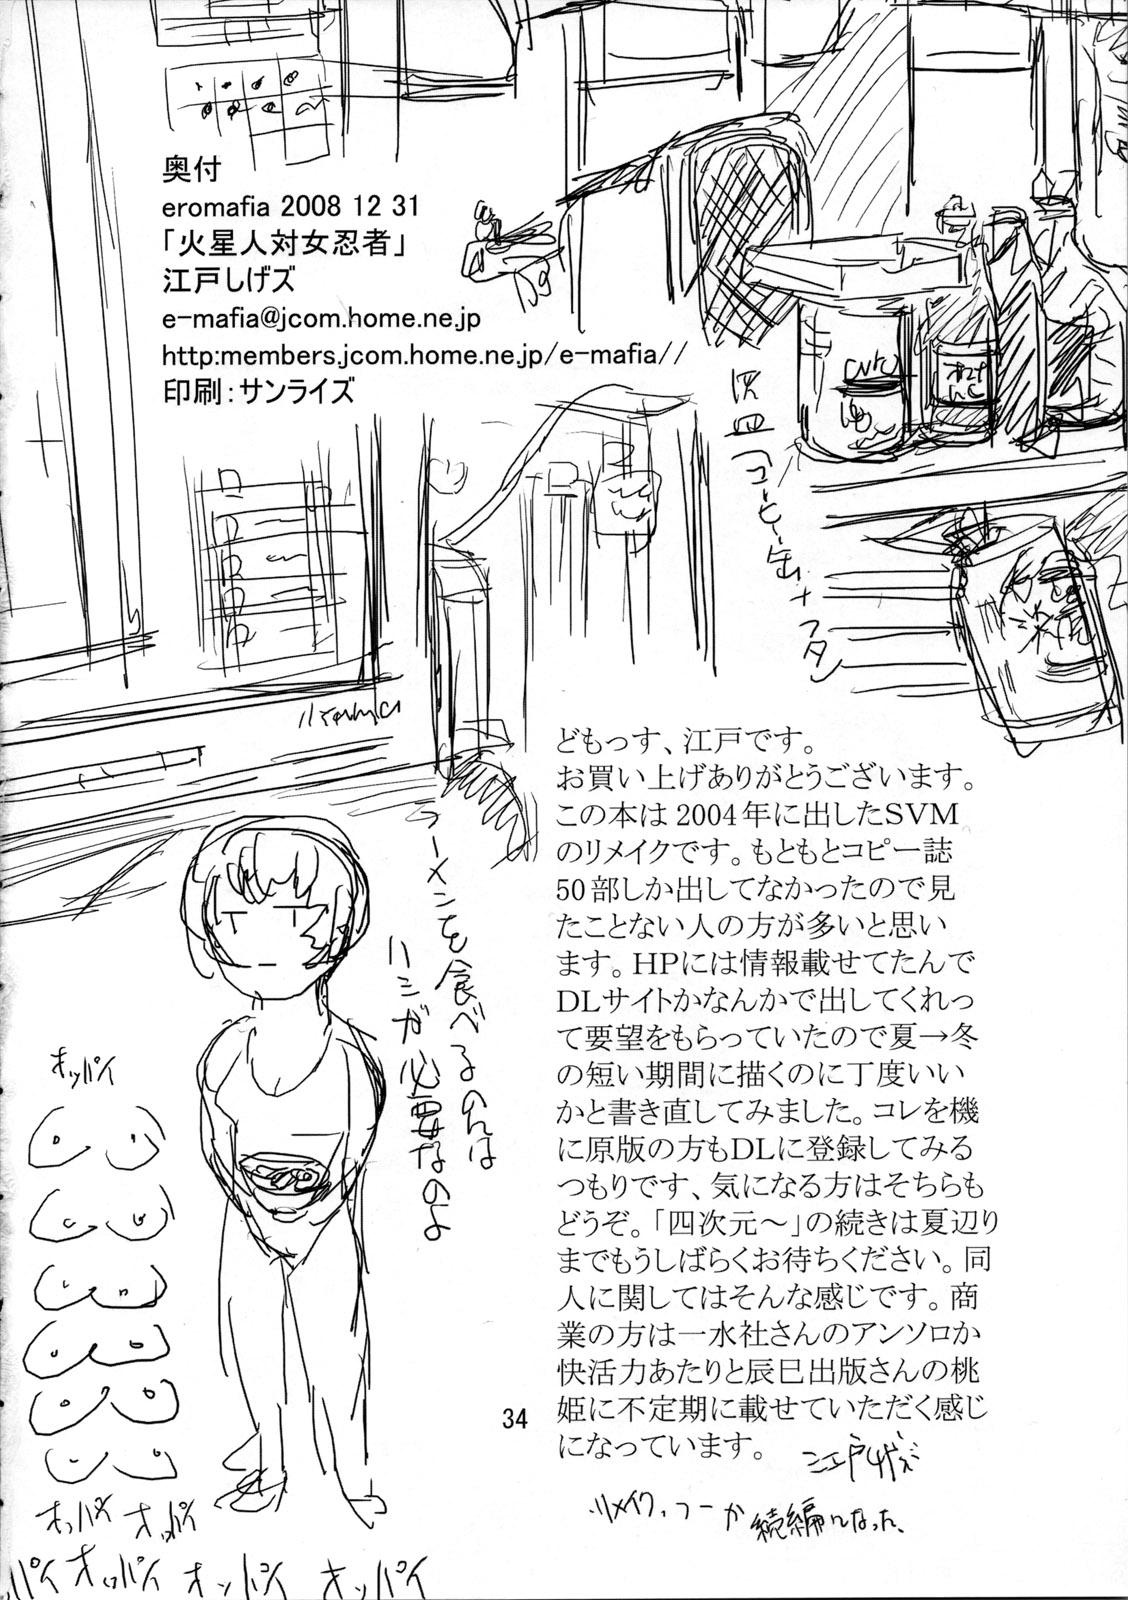 Female Orgasm Kaseijin Tai Onna Ninja - Mars People vs Mai Shiranui - King of fighters Metal slug Rope - Page 34